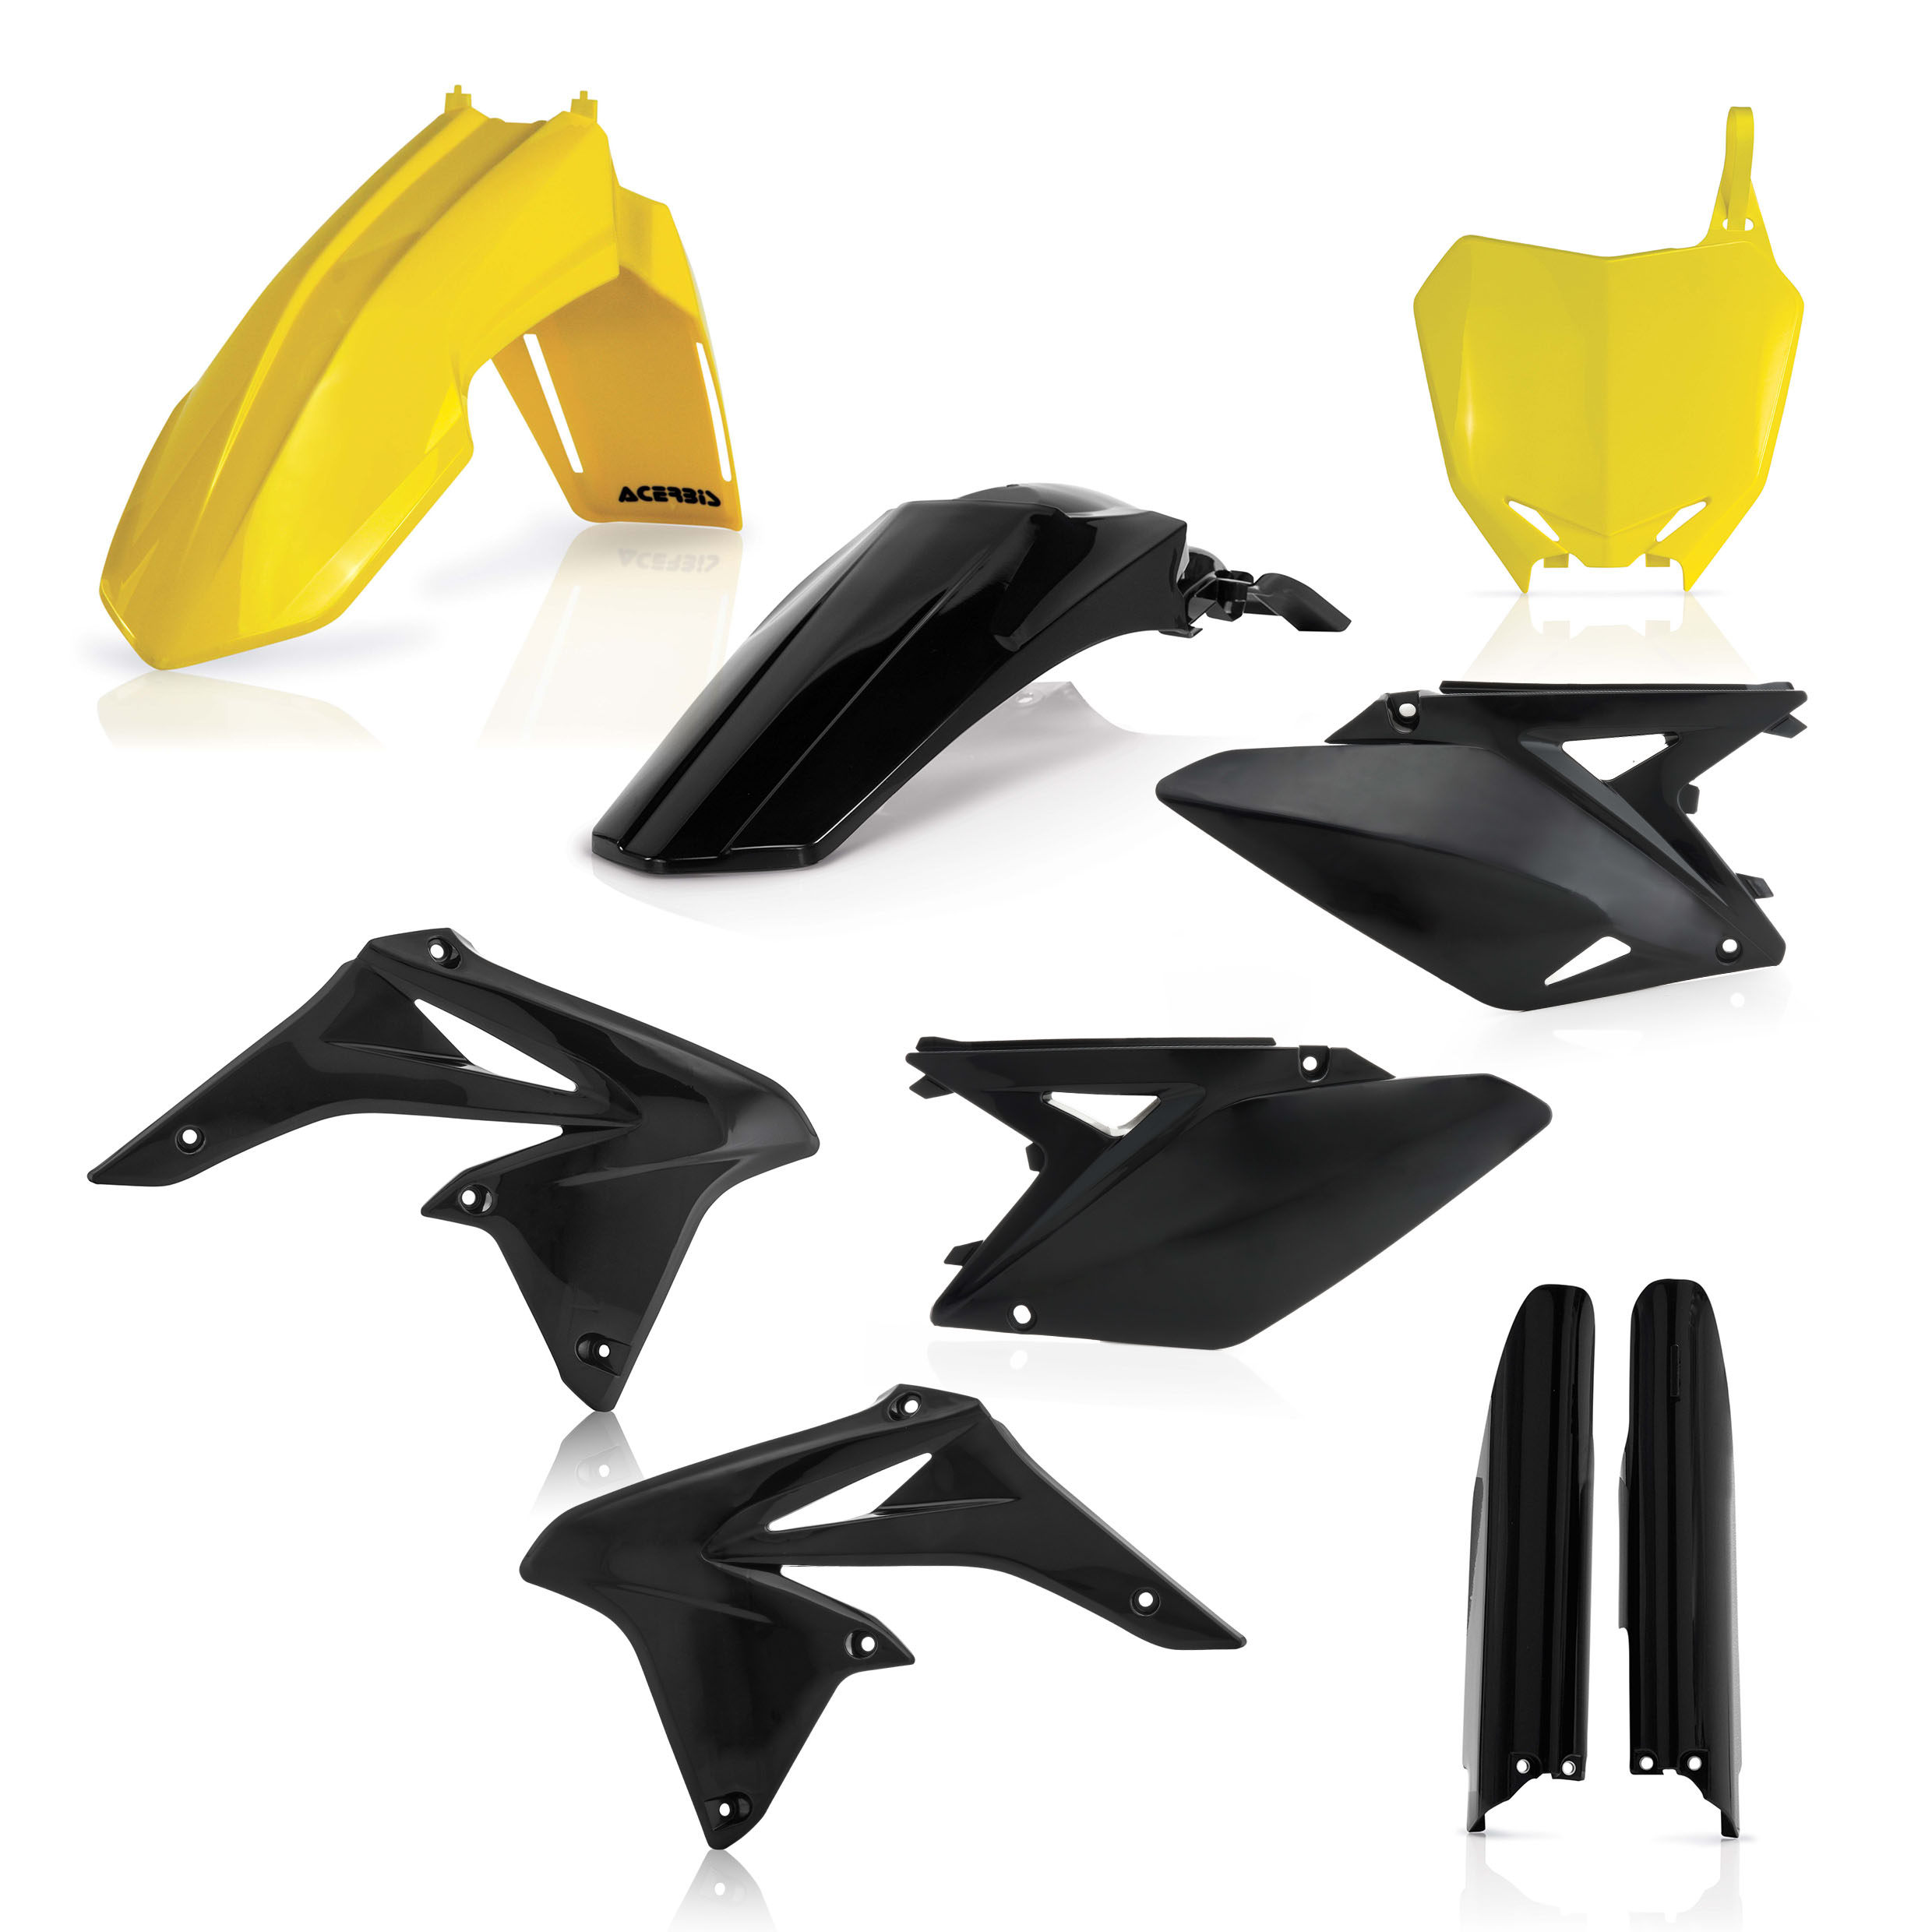 Plastikteile für deine Suzuki RM / RM-Z 250 in gelb-schwarz bestehend aus Kotflügel vorn Kotflügel hinten Kühlerspoiler Seitenteile Gabelschützer Startnummerntafel